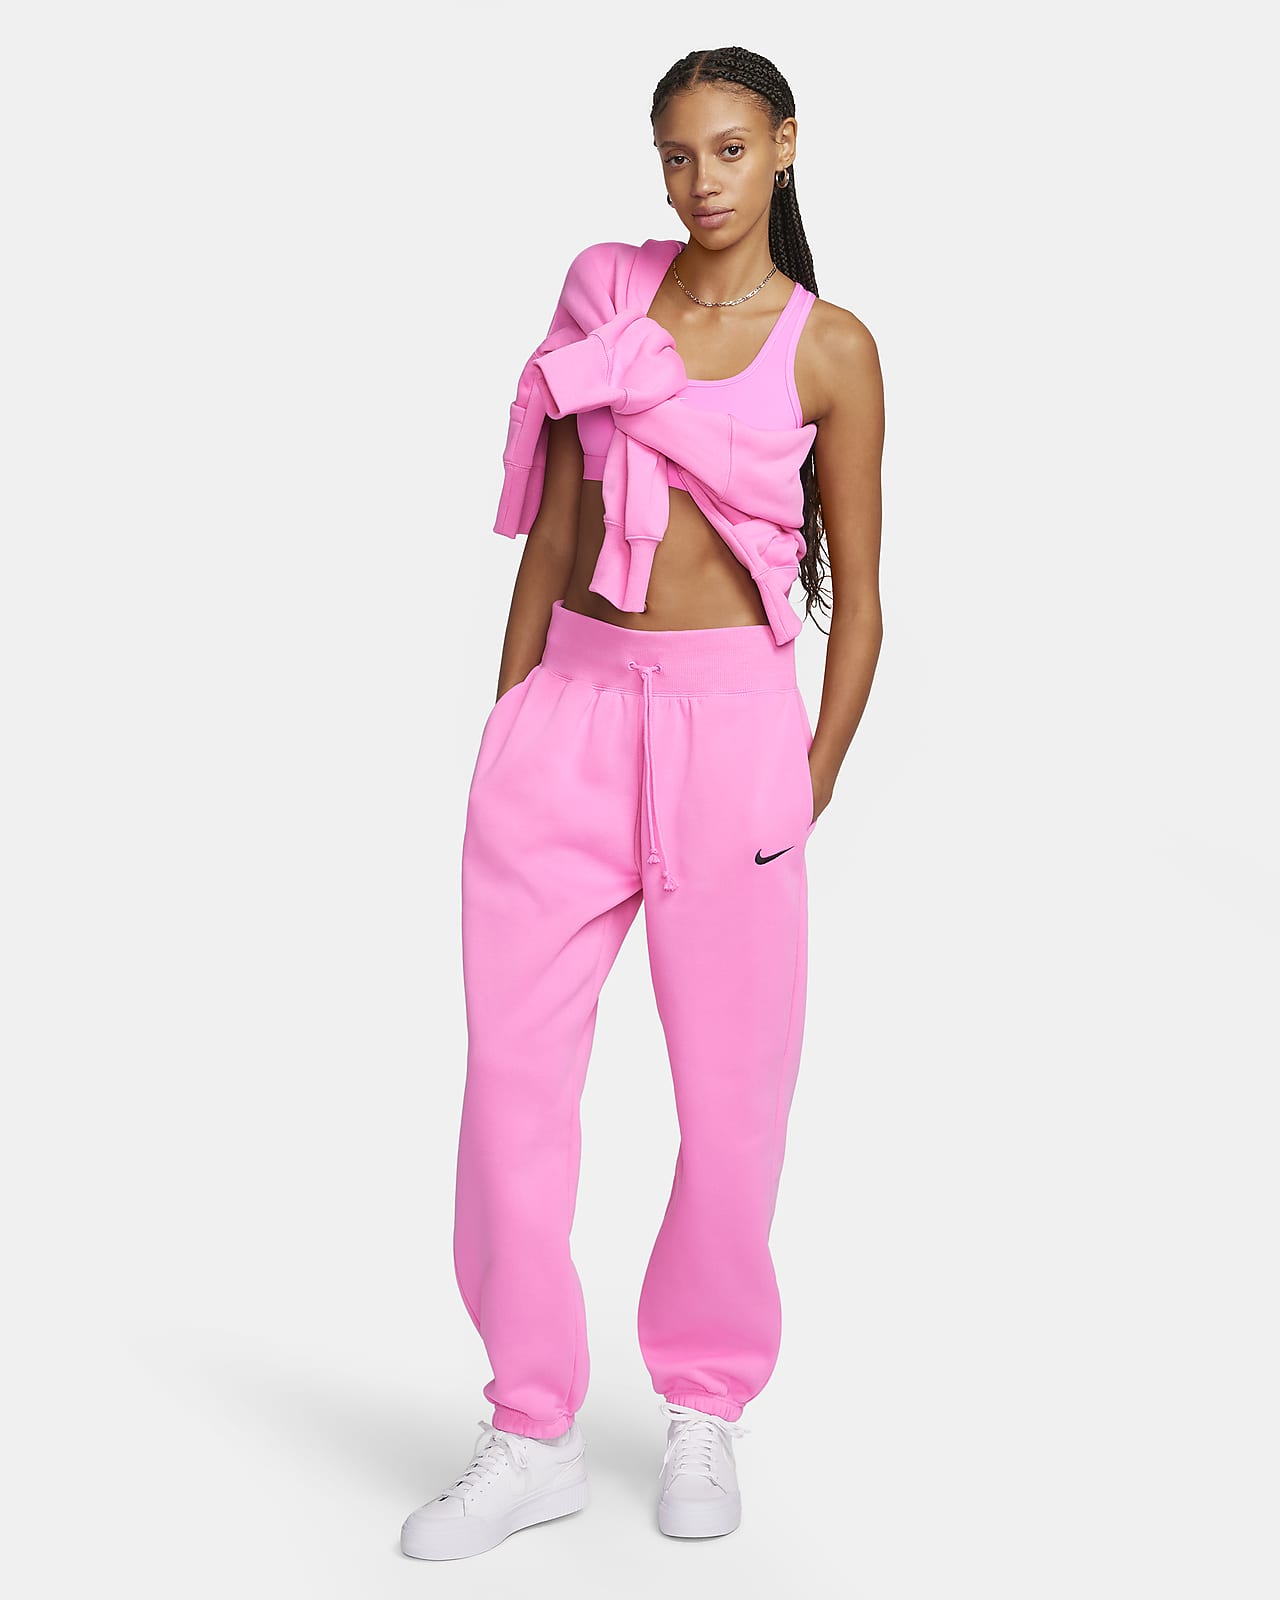 Nike Women's Fleece Sweatpants BV3472, Tech Sportswear Joggers, Cuffed Legs